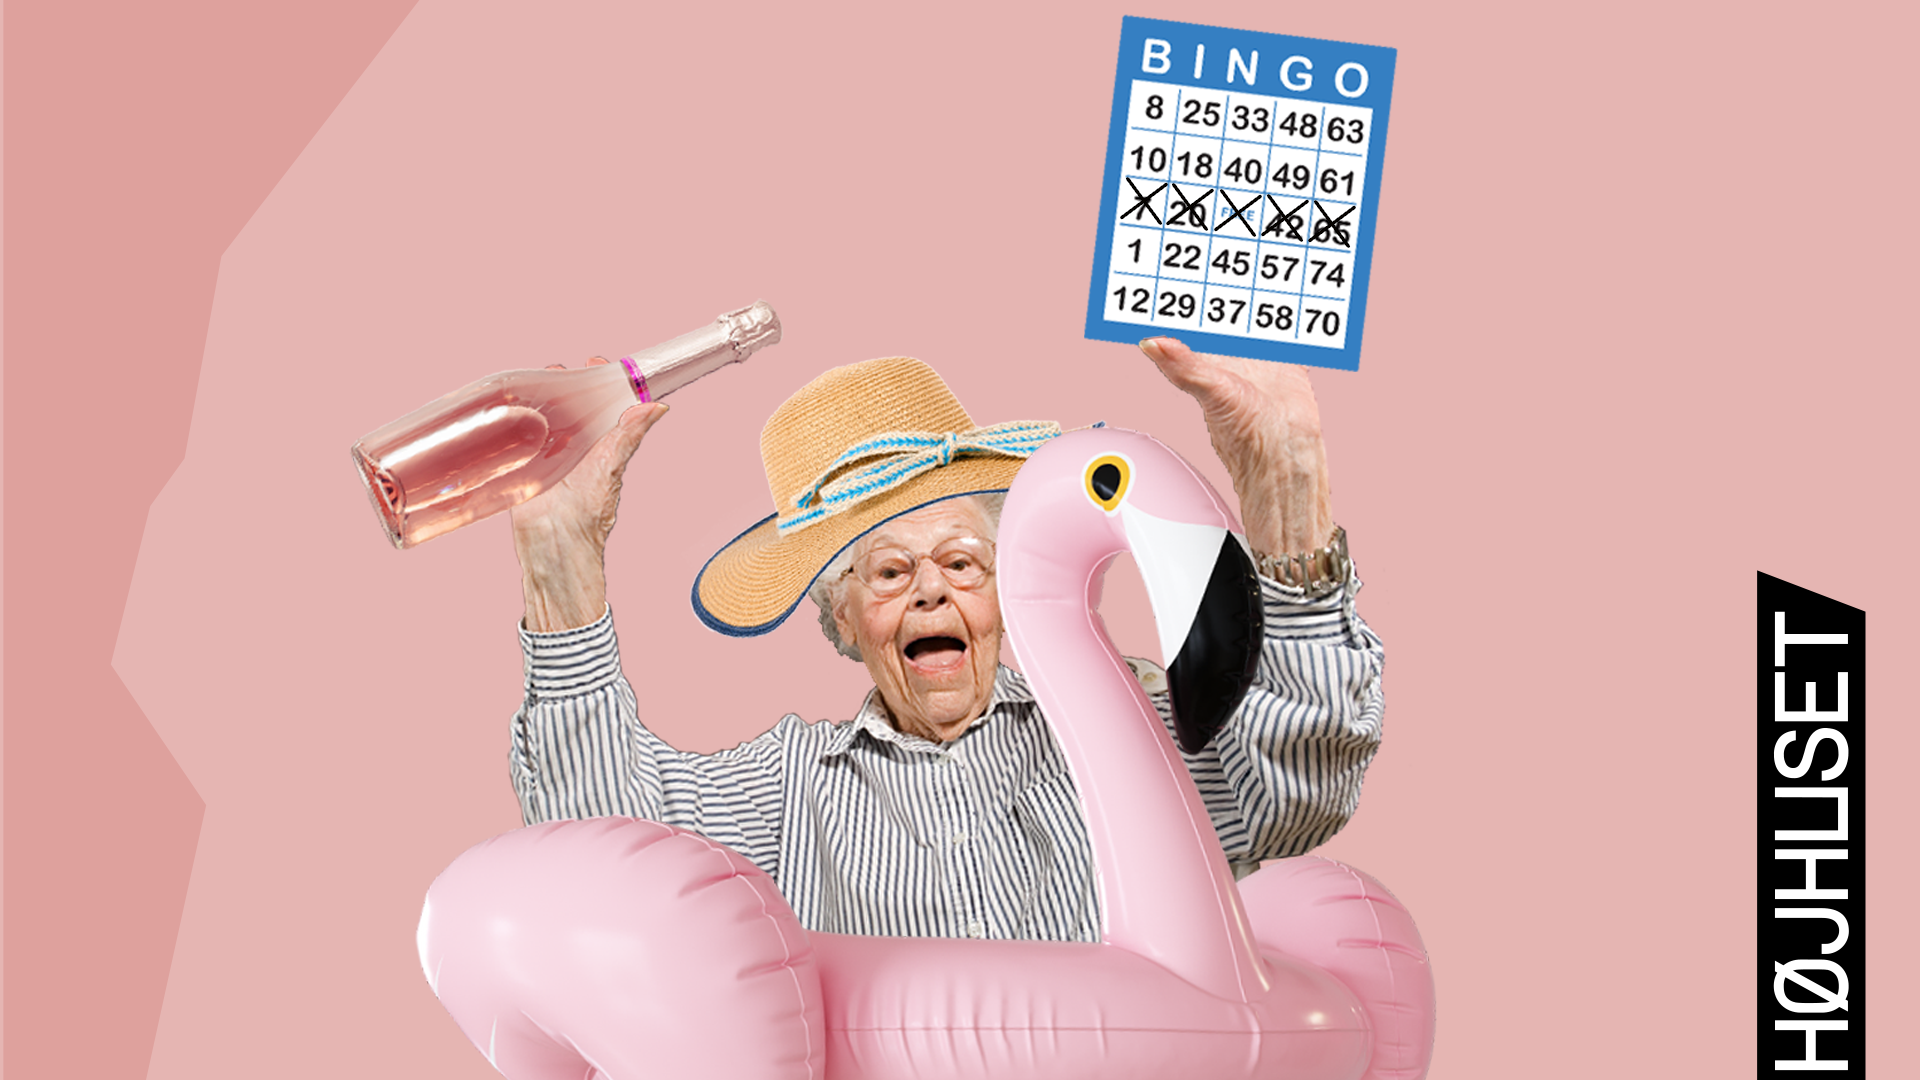 Eventbillede rose bingo